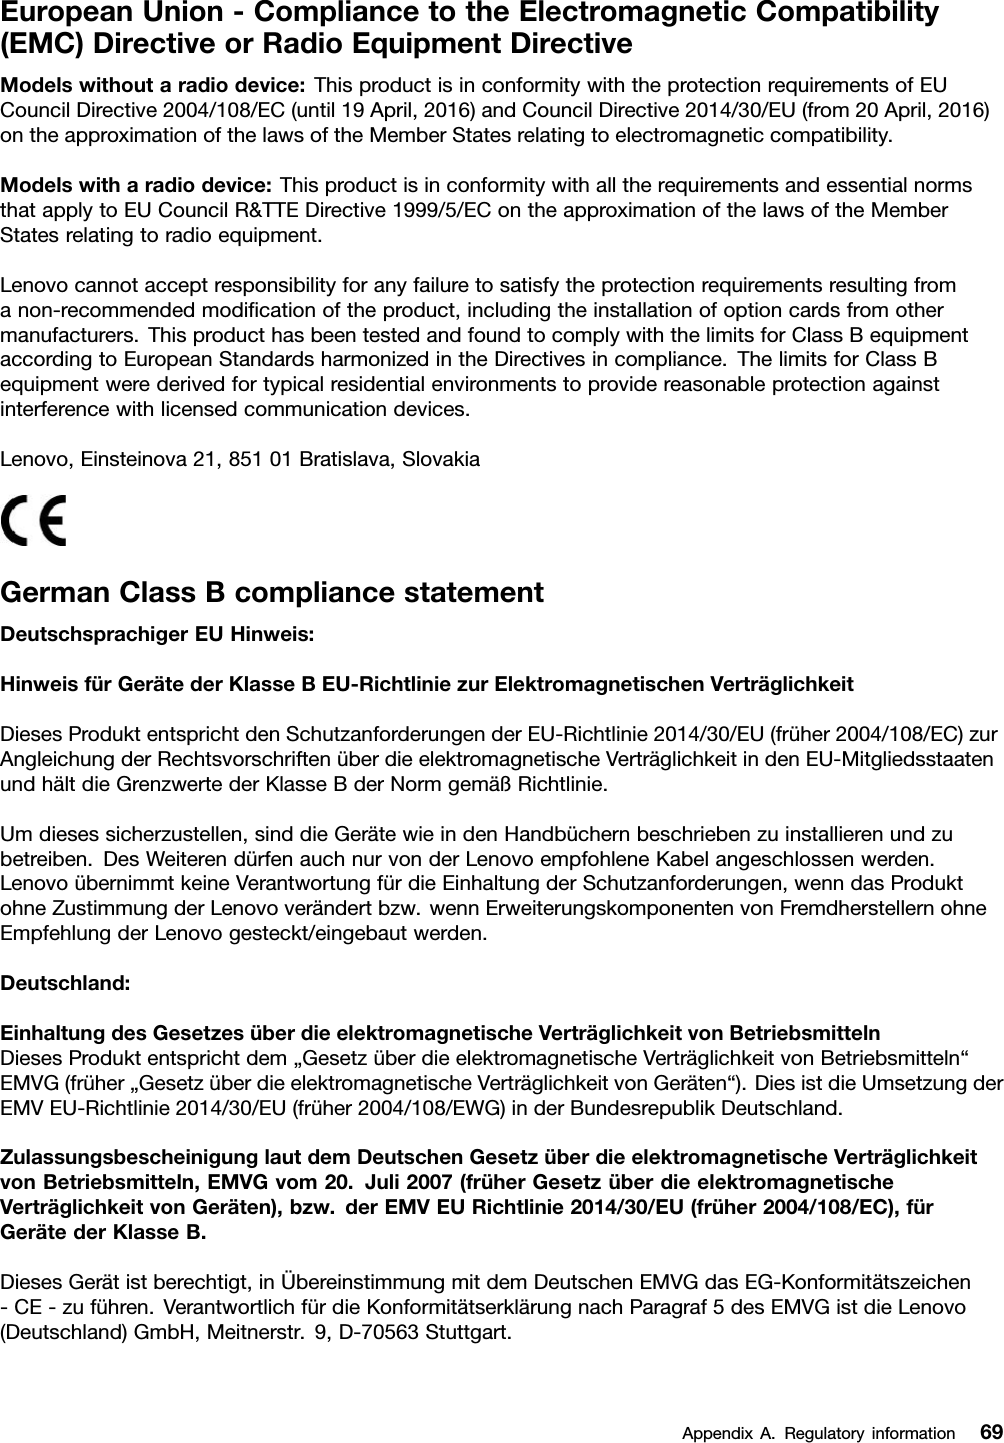 EuropeanUnion-CompliancetotheElectromagneticCompatibility(EMC)DirectiveorRadioEquipmentDirectiveModelswithoutaradiodevice:ThisproductisinconformitywiththeprotectionrequirementsofEUCouncilDirective2004/108/EC(until19April,2016)andCouncilDirective2014/30/EU(from20April,2016)ontheapproximationofthelawsoftheMemberStatesrelatingtoelectromagneticcompatibility.Modelswitharadiodevice:ThisproductisinconformitywithalltherequirementsandessentialnormsthatapplytoEUCouncilR&amp;TTEDirective1999/5/EContheapproximationofthelawsoftheMemberStatesrelatingtoradioequipment.Lenovocannotacceptresponsibilityforanyfailuretosatisfytheprotectionrequirementsresultingfromanon-recommendedmodiﬁcationoftheproduct,includingtheinstallationofoptioncardsfromothermanufacturers.ThisproducthasbeentestedandfoundtocomplywiththelimitsforClassBequipmentaccordingtoEuropeanStandardsharmonizedintheDirectivesincompliance.ThelimitsforClassBequipmentwerederivedfortypicalresidentialenvironmentstoprovidereasonableprotectionagainstinterferencewithlicensedcommunicationdevices.Lenovo,Einsteinova21,85101Bratislava,SlovakiaGermanClassBcompliancestatementDeutschsprachigerEUHinweis:HinweisfürGerätederKlasseBEU-RichtliniezurElektromagnetischenVerträglichkeitDiesesProduktentsprichtdenSchutzanforderungenderEU-Richtlinie2014/30/EU(früher2004/108/EC)zurAngleichungderRechtsvorschriftenüberdieelektromagnetischeVerträglichkeitindenEU-MitgliedsstaatenundhältdieGrenzwertederKlasseBderNormgemäßRichtlinie.Umdiesessicherzustellen,sinddieGerätewieindenHandbüchernbeschriebenzuinstallierenundzubetreiben.DesWeiterendürfenauchnurvonderLenovoempfohleneKabelangeschlossenwerden.LenovoübernimmtkeineVerantwortungfürdieEinhaltungderSchutzanforderungen,wenndasProduktohneZustimmungderLenovoverändertbzw.wennErweiterungskomponentenvonFremdherstellernohneEmpfehlungderLenovogesteckt/eingebautwerden.Deutschland:EinhaltungdesGesetzesüberdieelektromagnetischeVerträglichkeitvonBetriebsmittelnDiesesProduktentsprichtdem„GesetzüberdieelektromagnetischeVerträglichkeitvonBetriebsmitteln“EMVG(früher„GesetzüberdieelektromagnetischeVerträglichkeitvonGeräten“).DiesistdieUmsetzungderEMVEU-Richtlinie2014/30/EU(früher2004/108/EWG)inderBundesrepublikDeutschland.ZulassungsbescheinigunglautdemDeutschenGesetzüberdieelektromagnetischeVerträglichkeitvonBetriebsmitteln,EMVGvom20.Juli2007(früherGesetzüberdieelektromagnetischeVerträglichkeitvonGeräten),bzw.derEMVEURichtlinie2014/30/EU(früher2004/108/EC),fürGerätederKlasseB.DiesesGerätistberechtigt,inÜbereinstimmungmitdemDeutschenEMVGdasEG-Konformitätszeichen-CE-zuführen.VerantwortlichfürdieKonformitätserklärungnachParagraf5desEMVGistdieLenovo(Deutschland)GmbH,Meitnerstr.9,D-70563Stuttgart.AppendixA.Regulatoryinformation69